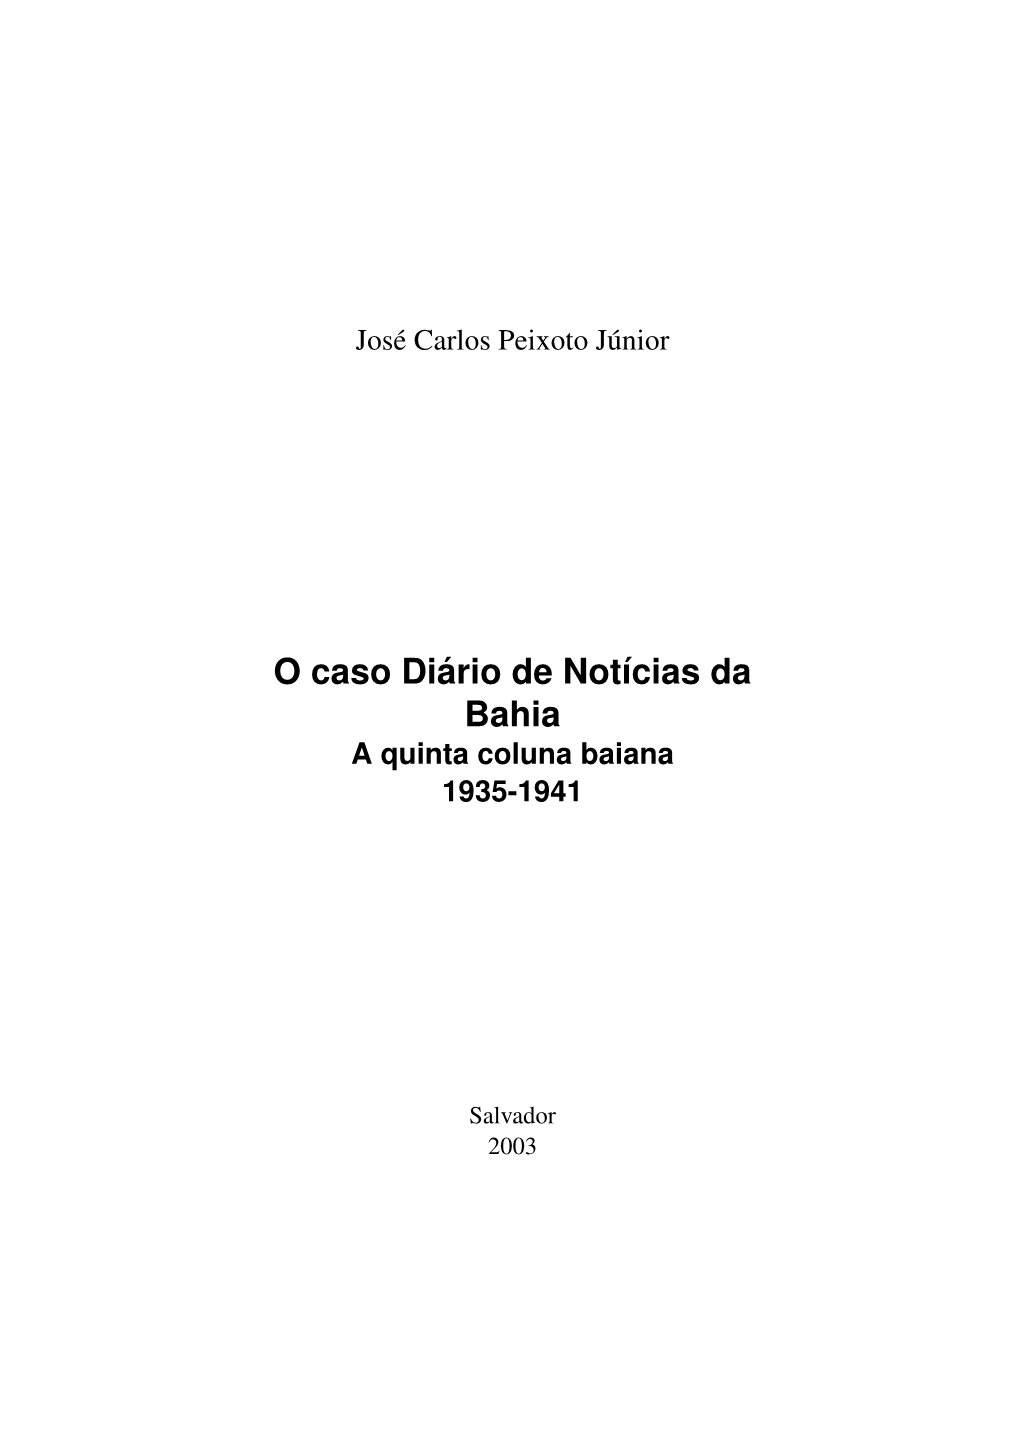 O Caso Diário De Notícias Da Bahia a Quinta Coluna Baiana 1935-1941